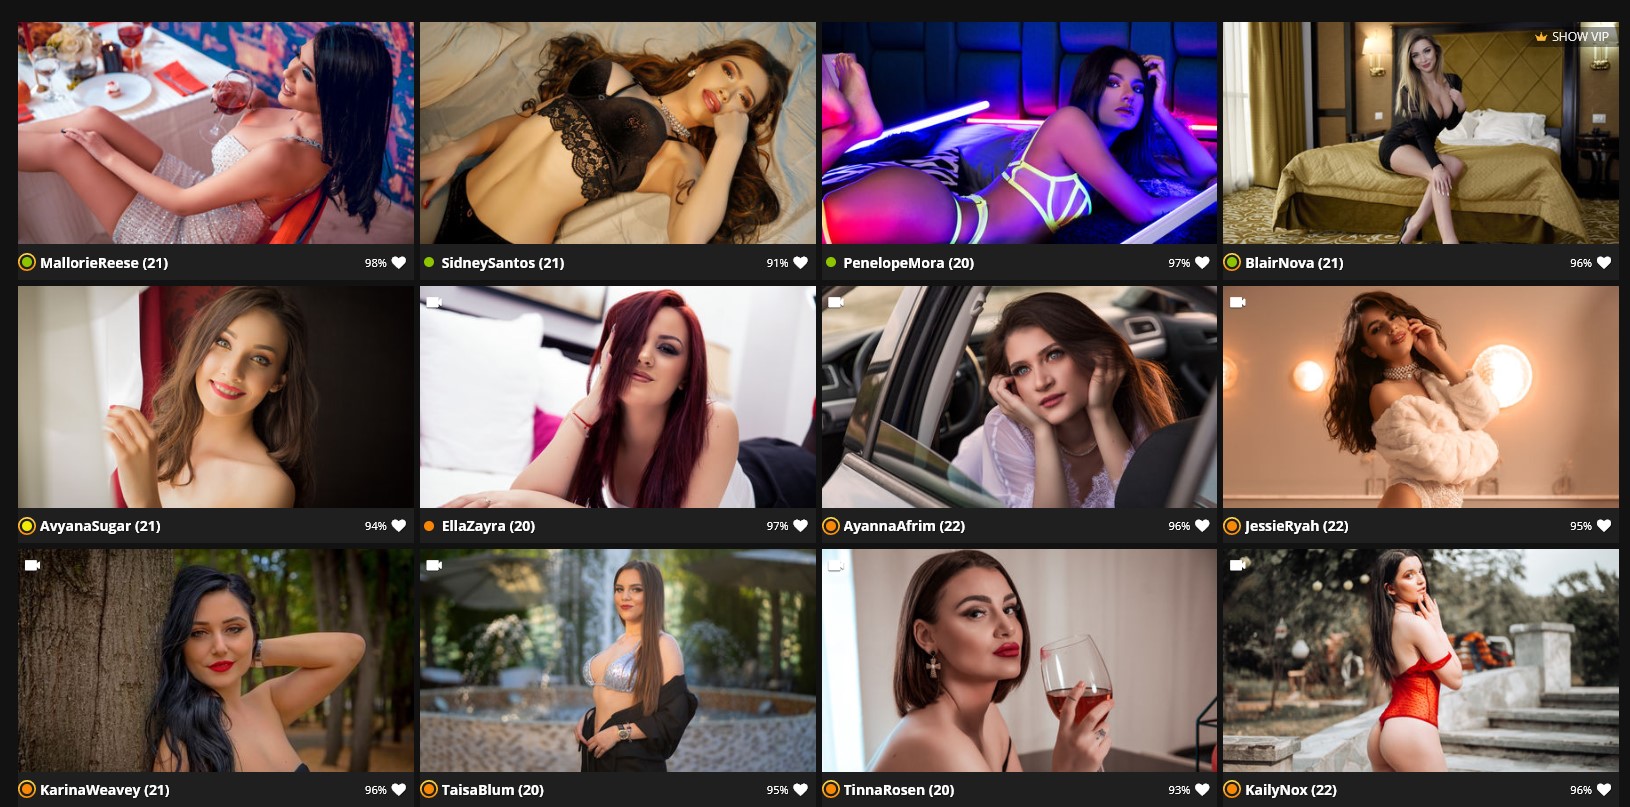 1630px x 807px - Live Porn: Free Live Sex Cam Girls & Private Porn Shows